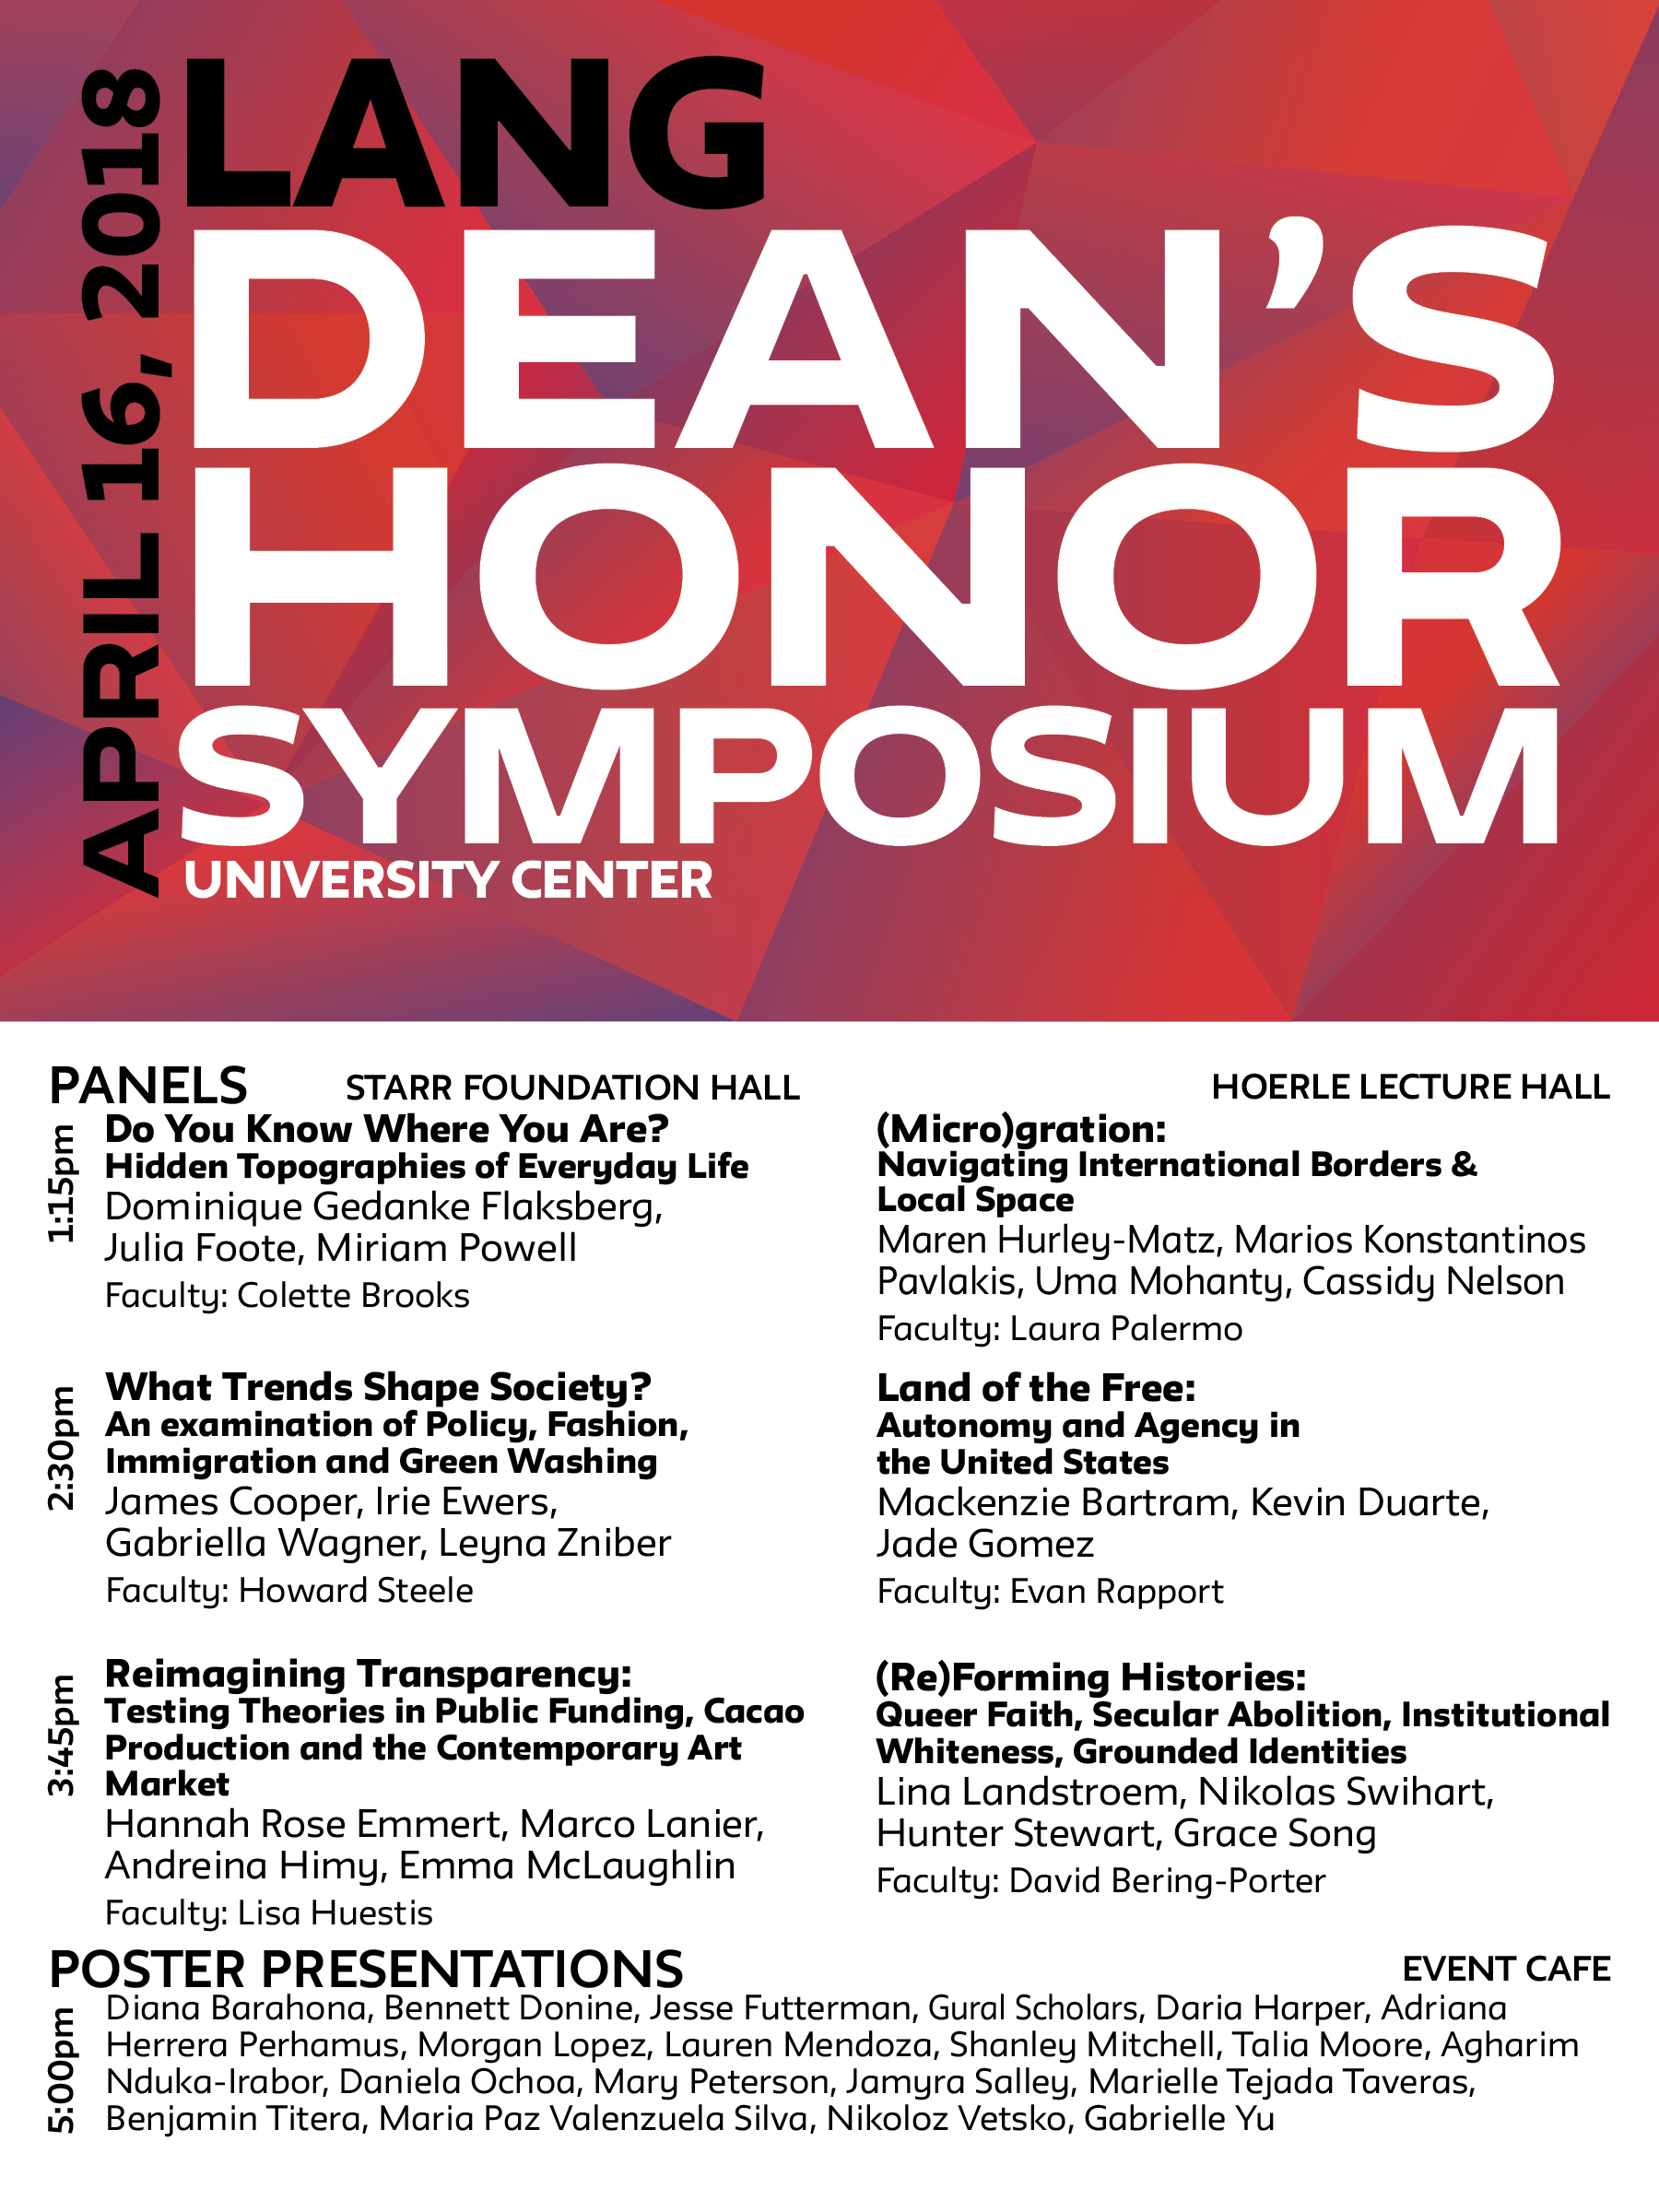 Dean's Honor Symposium